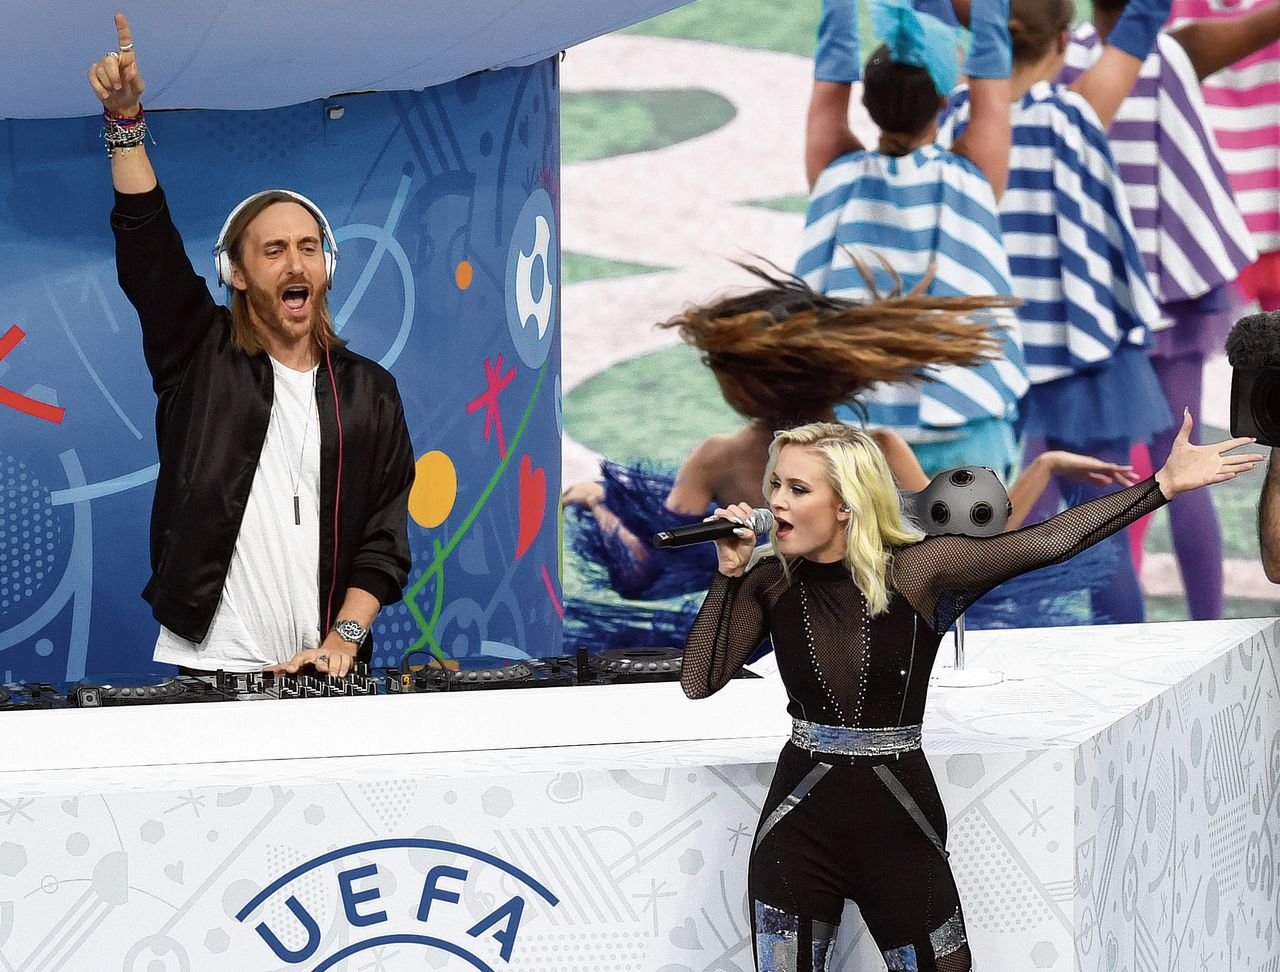 Dj David Guetta (l) met zangeres Zara Larsson tijdens de openingsceremonie van het EK voetbal 2016. Guetta’s EK-hymne This One’s For You (2016) is alweer uit het collectieve geheugen verdwenen.